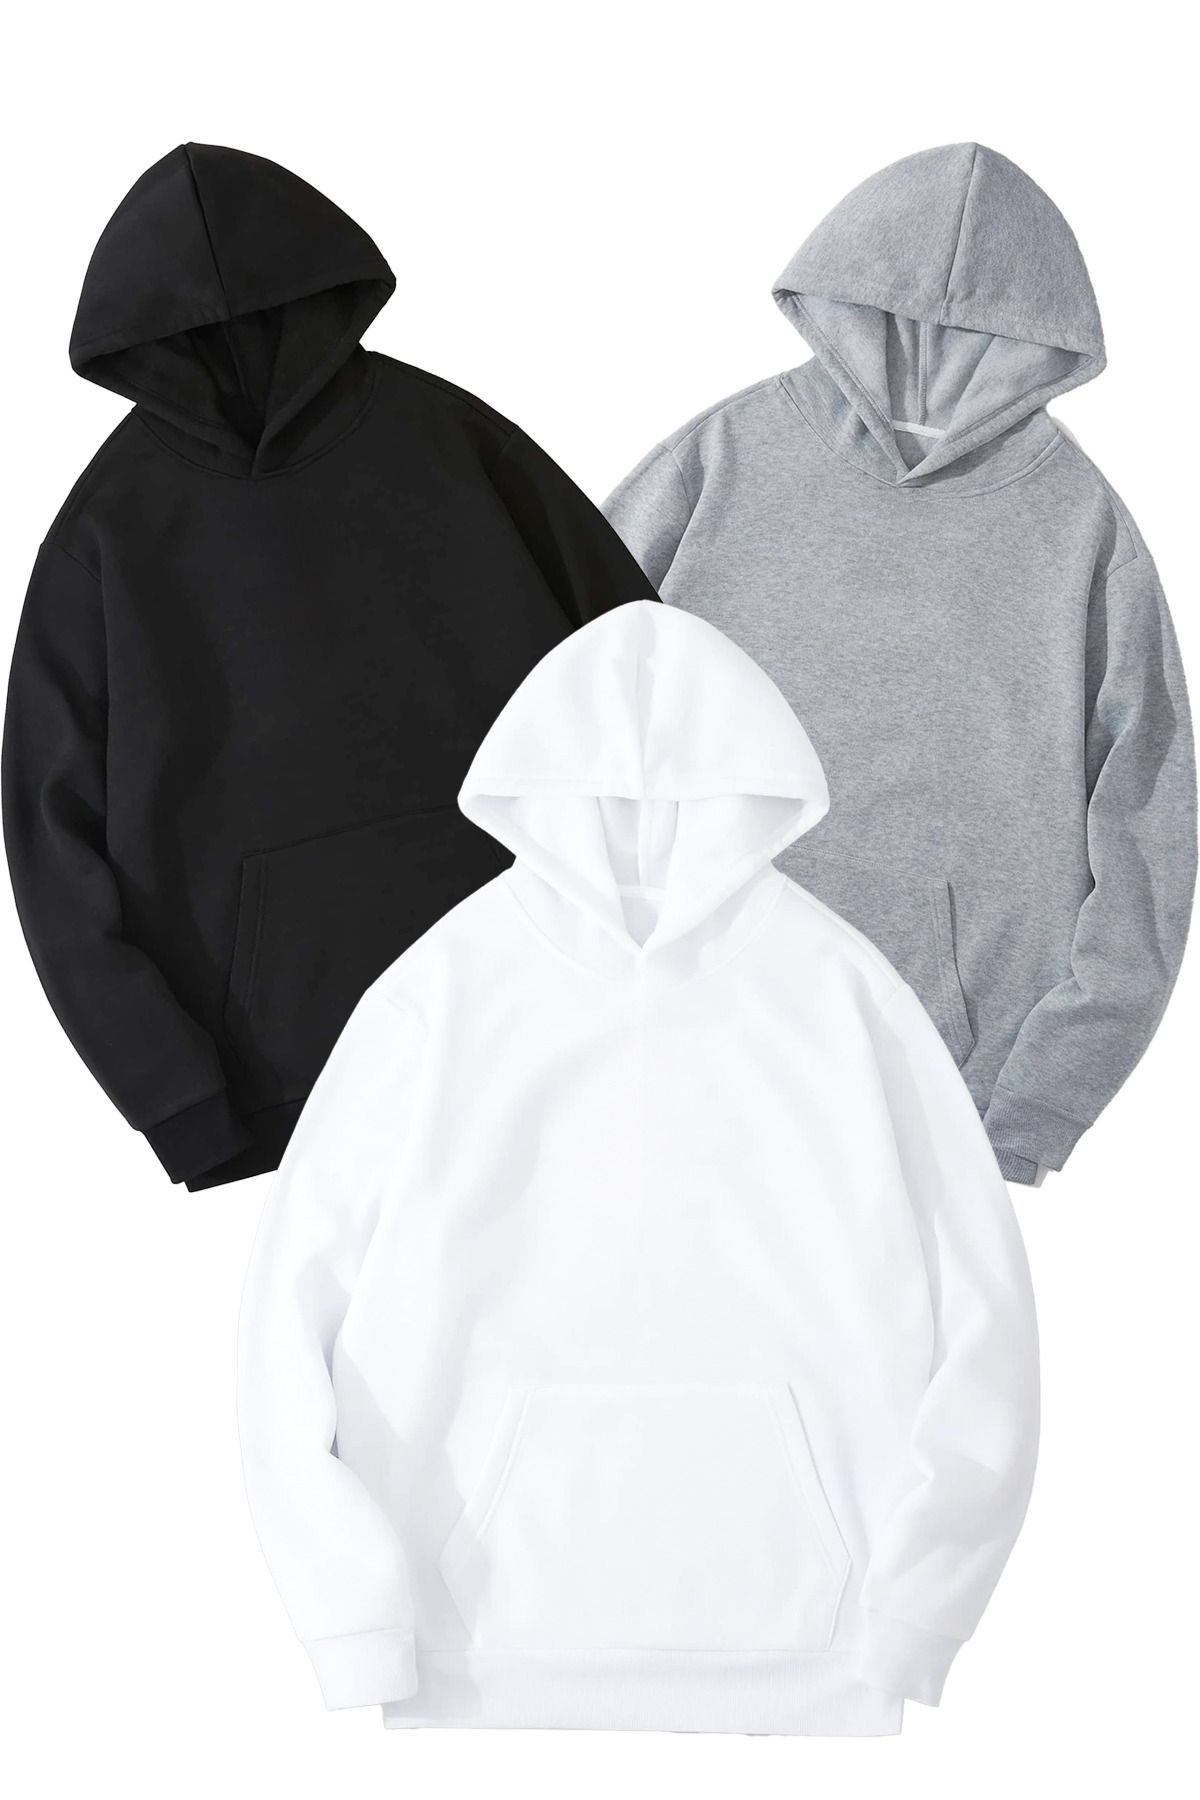 DUBU BUTİK 3'Lü Düz Basic Kalın Kışlık Sweatshirt - Siyah Gri Beyaz Oversize Kapüşonlu